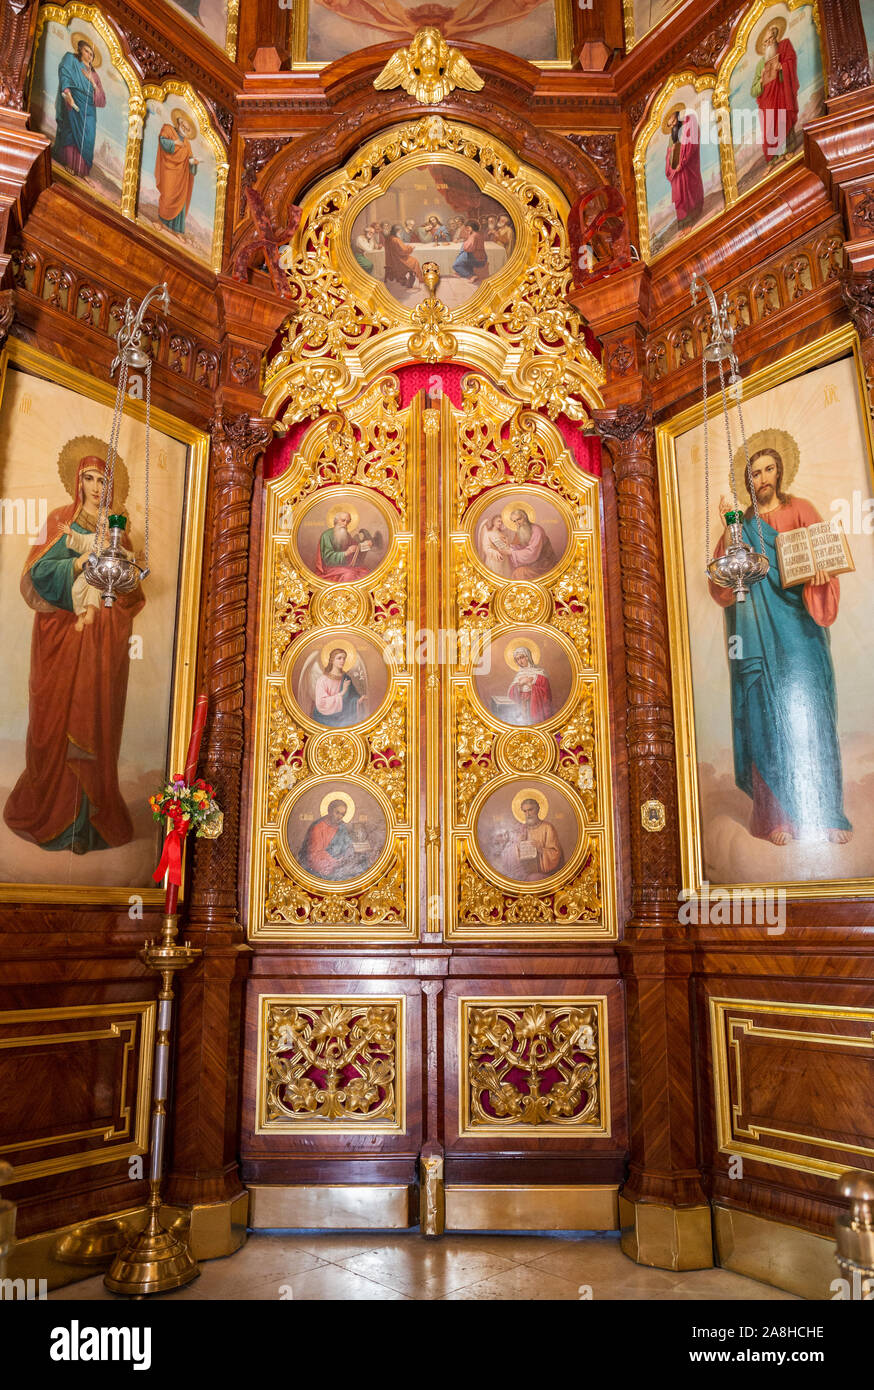 SERGIEV POSAD, Moskau, Russland - 10. MAI 2018: Trinity Lavra von St. Sergius, Innenansicht der Kirche von der Herabkunft des Heiligen Geistes. Sanctuary Stockfoto